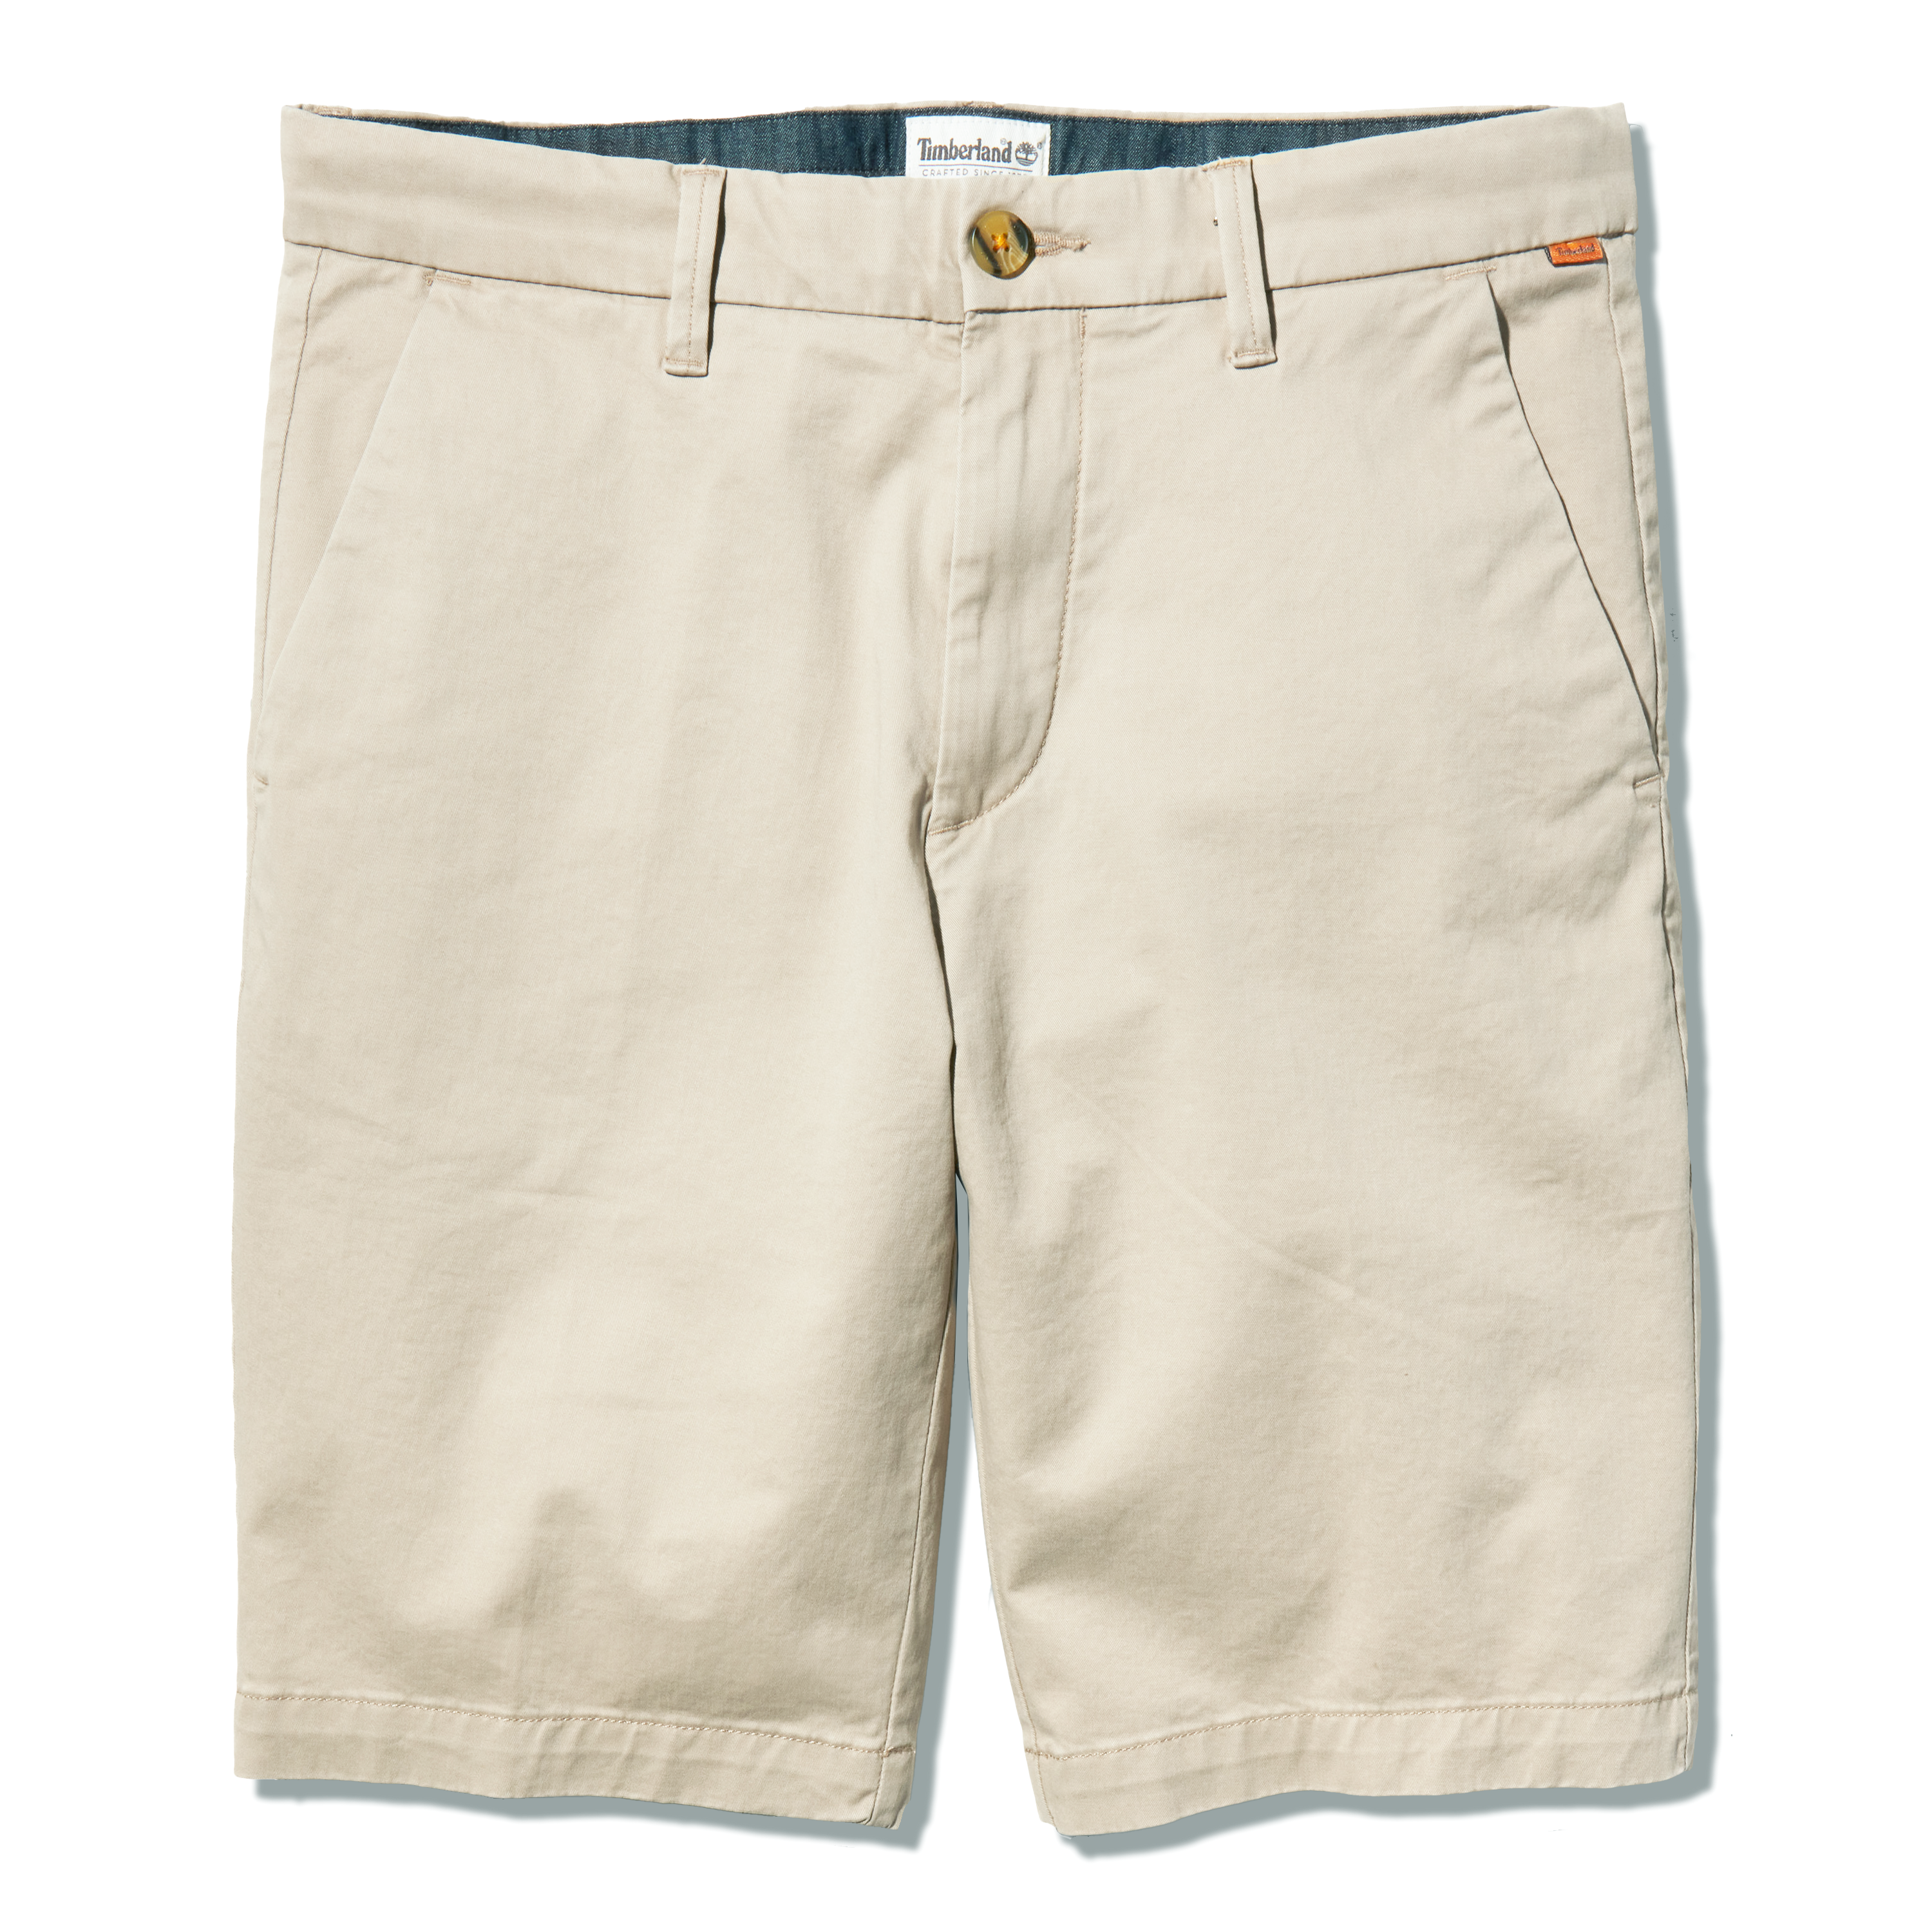 Timberland Straight Men's Chino Shorts